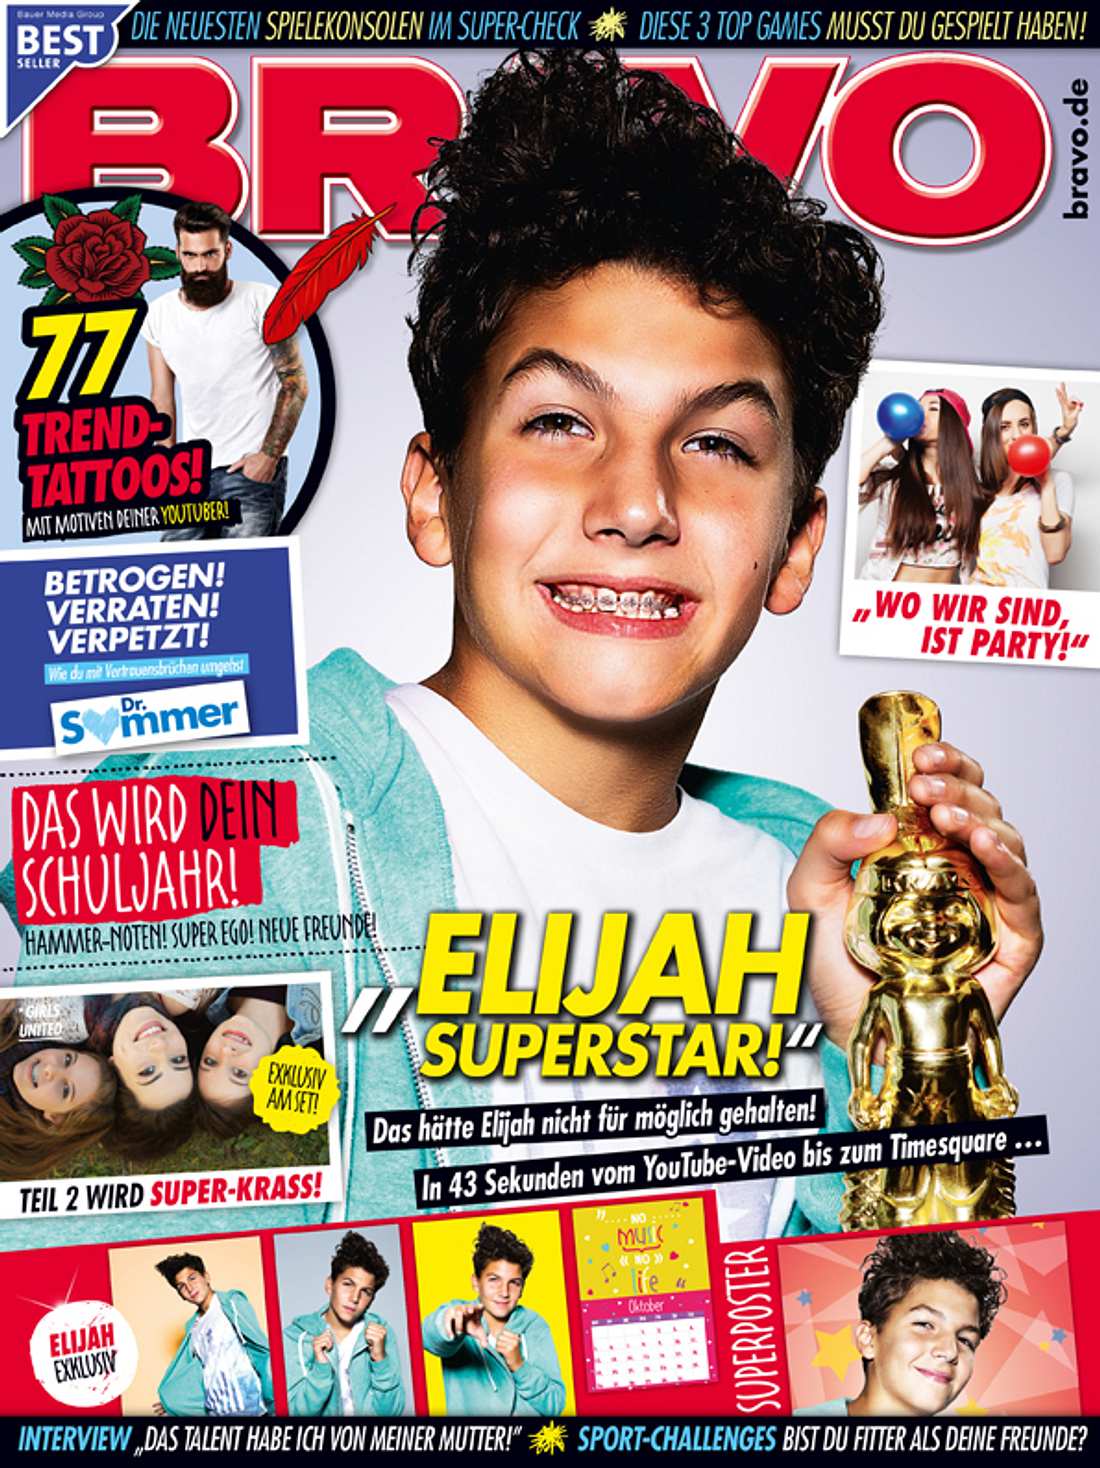 Das Bravo Cover mit Elijah Superstar